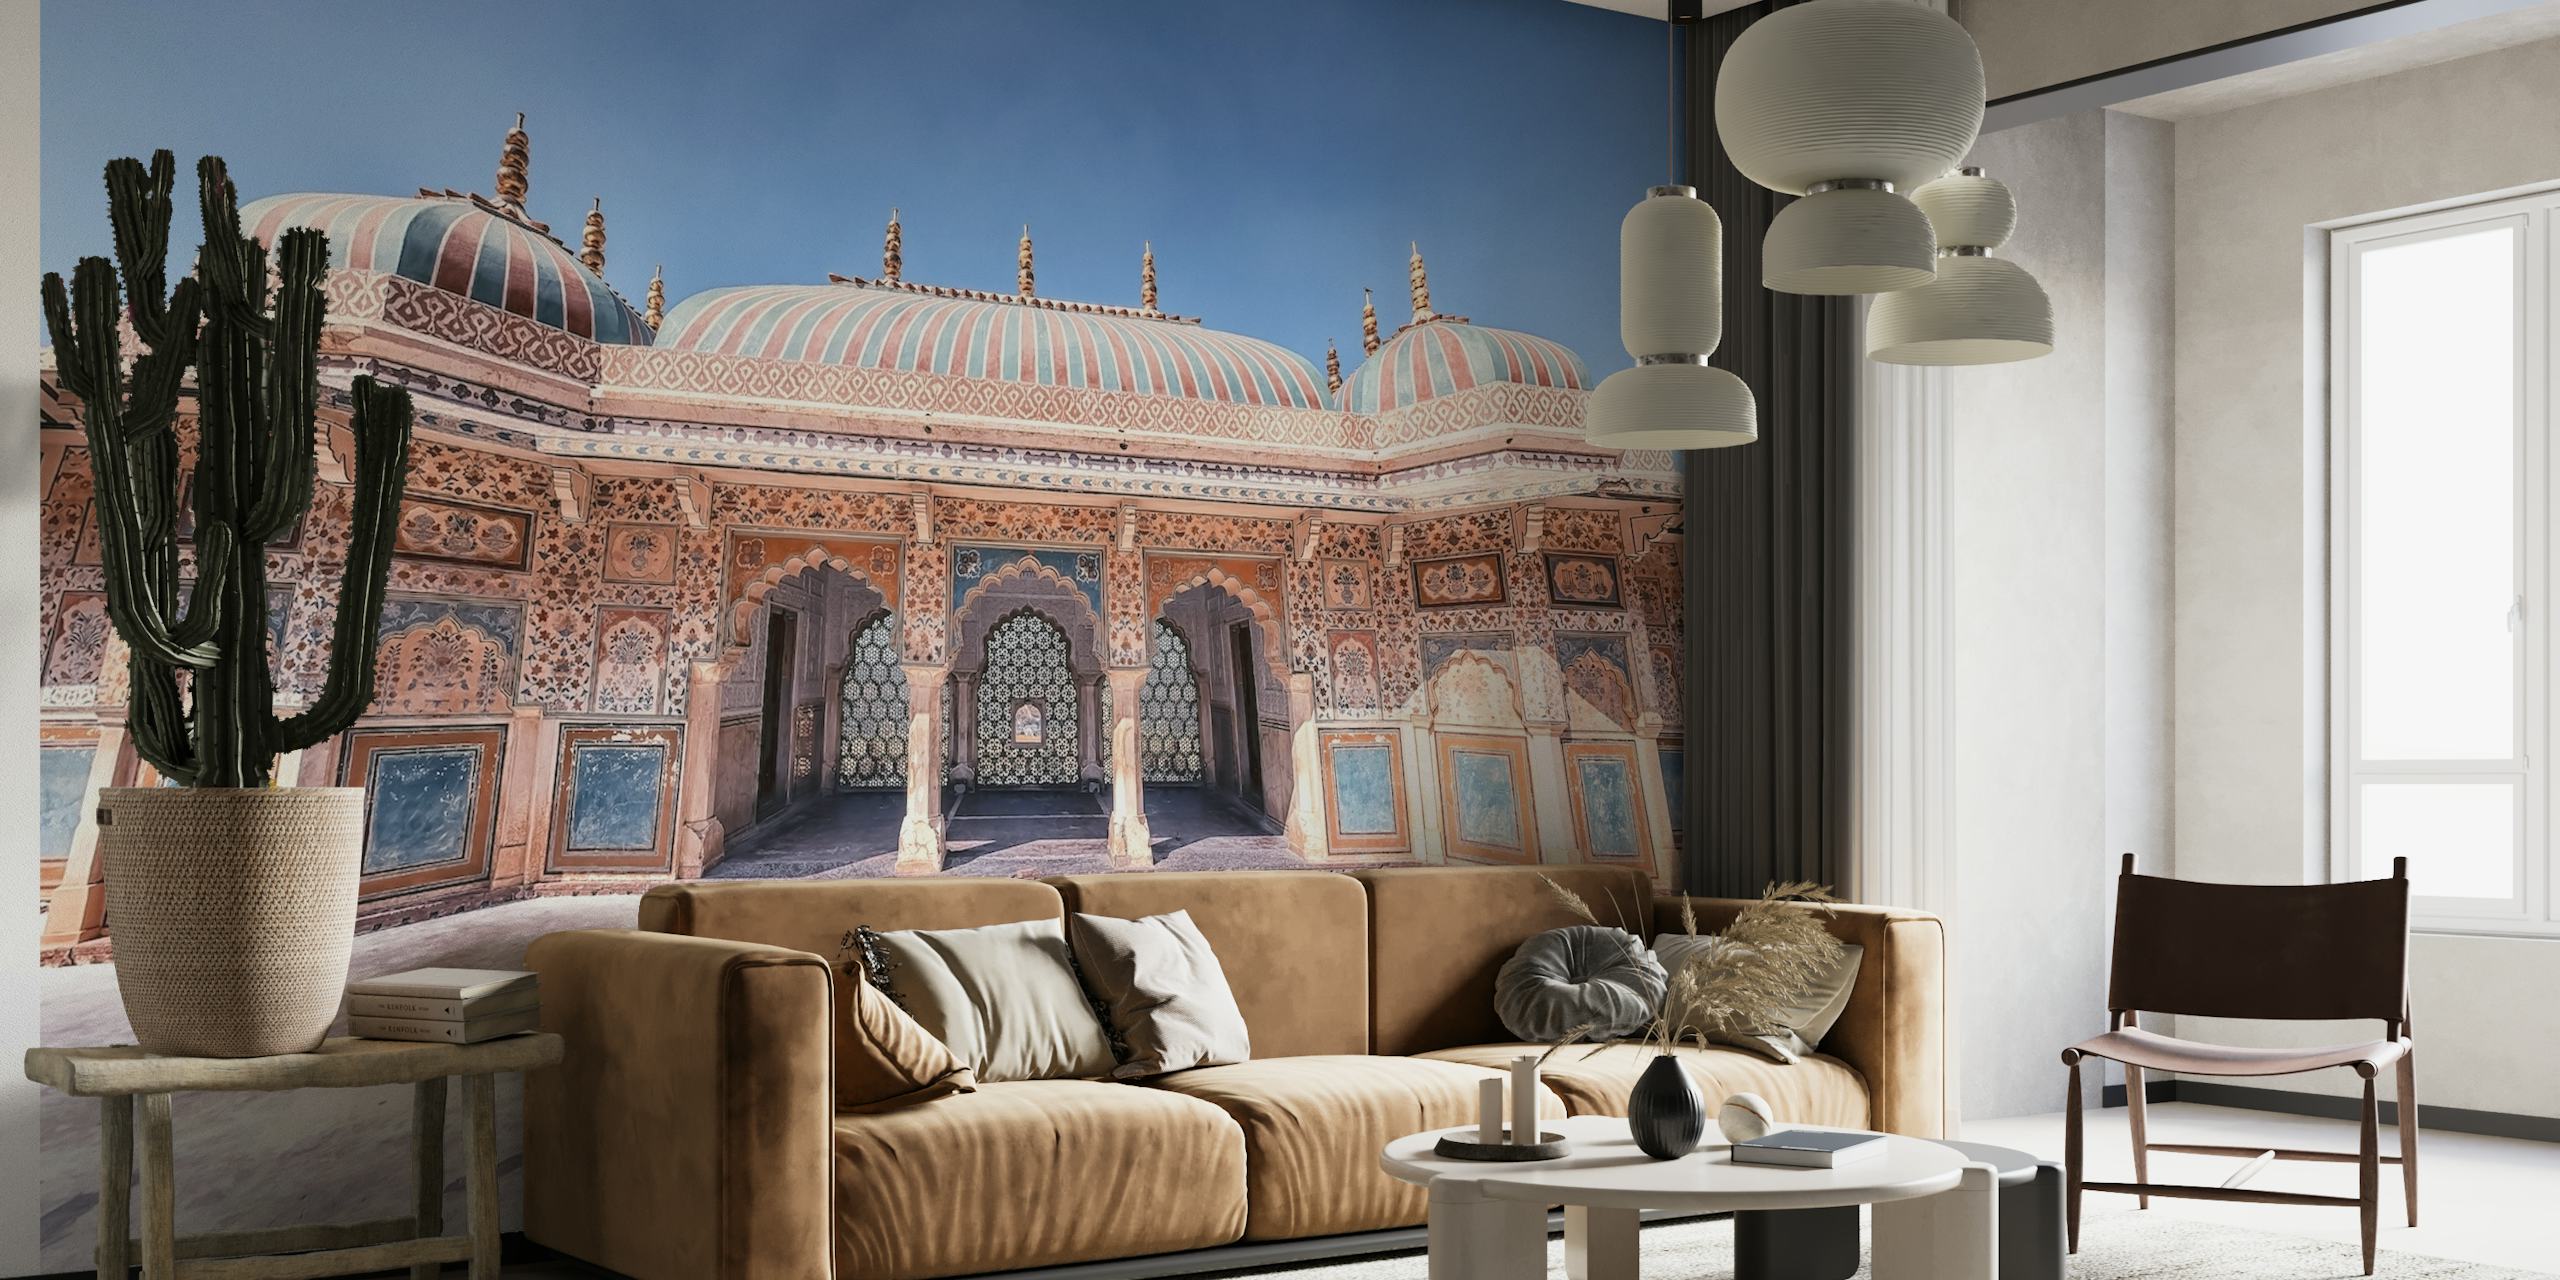 Wandgemälde des Amber Fort, das die majestätische indische Architektur und die komplizierten Details des Palastes darstellt